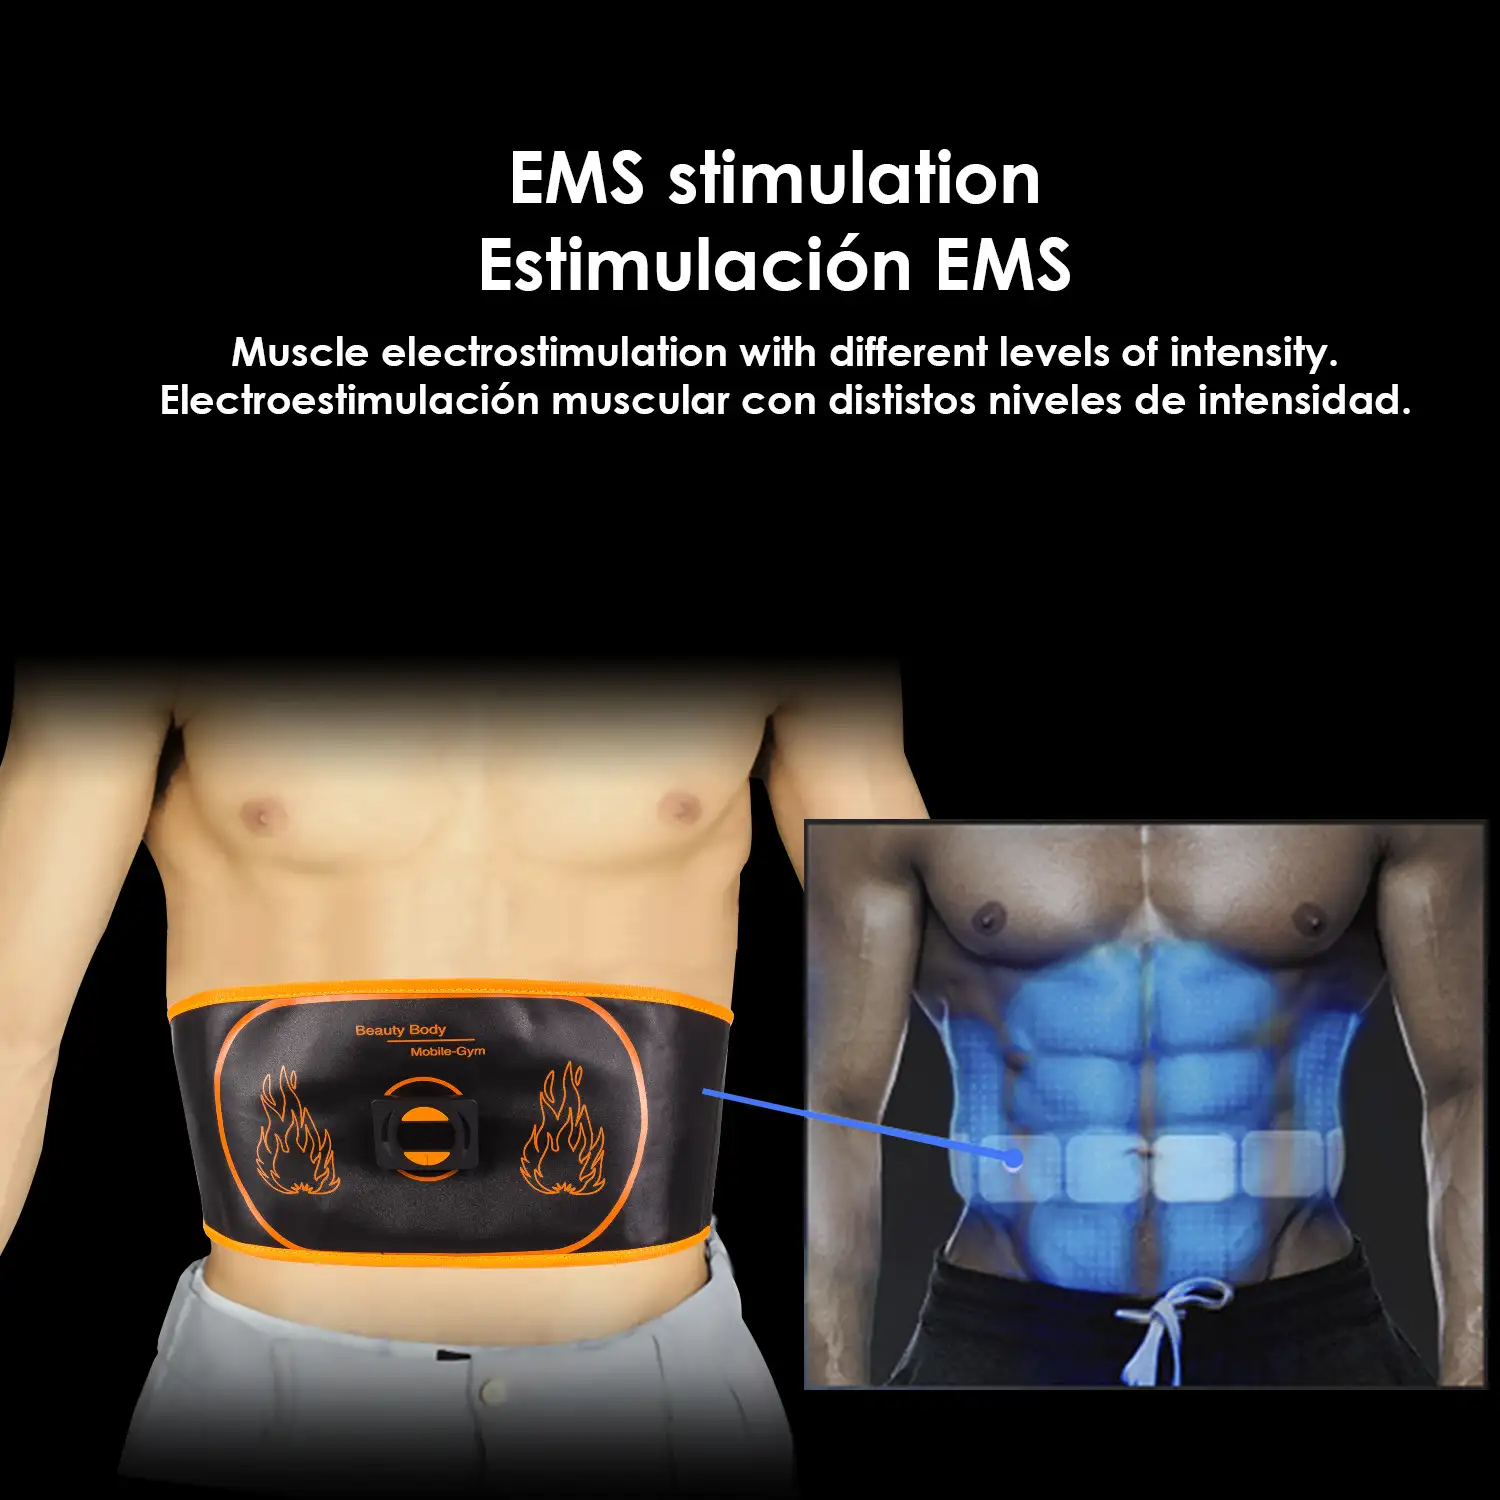 Cinturón estimulador eléctrico de cintura y abdomen EMS Smart Fitness. Batería recargable. 15 intensidades, 6 modos. Promueve la circulación sanguínea.